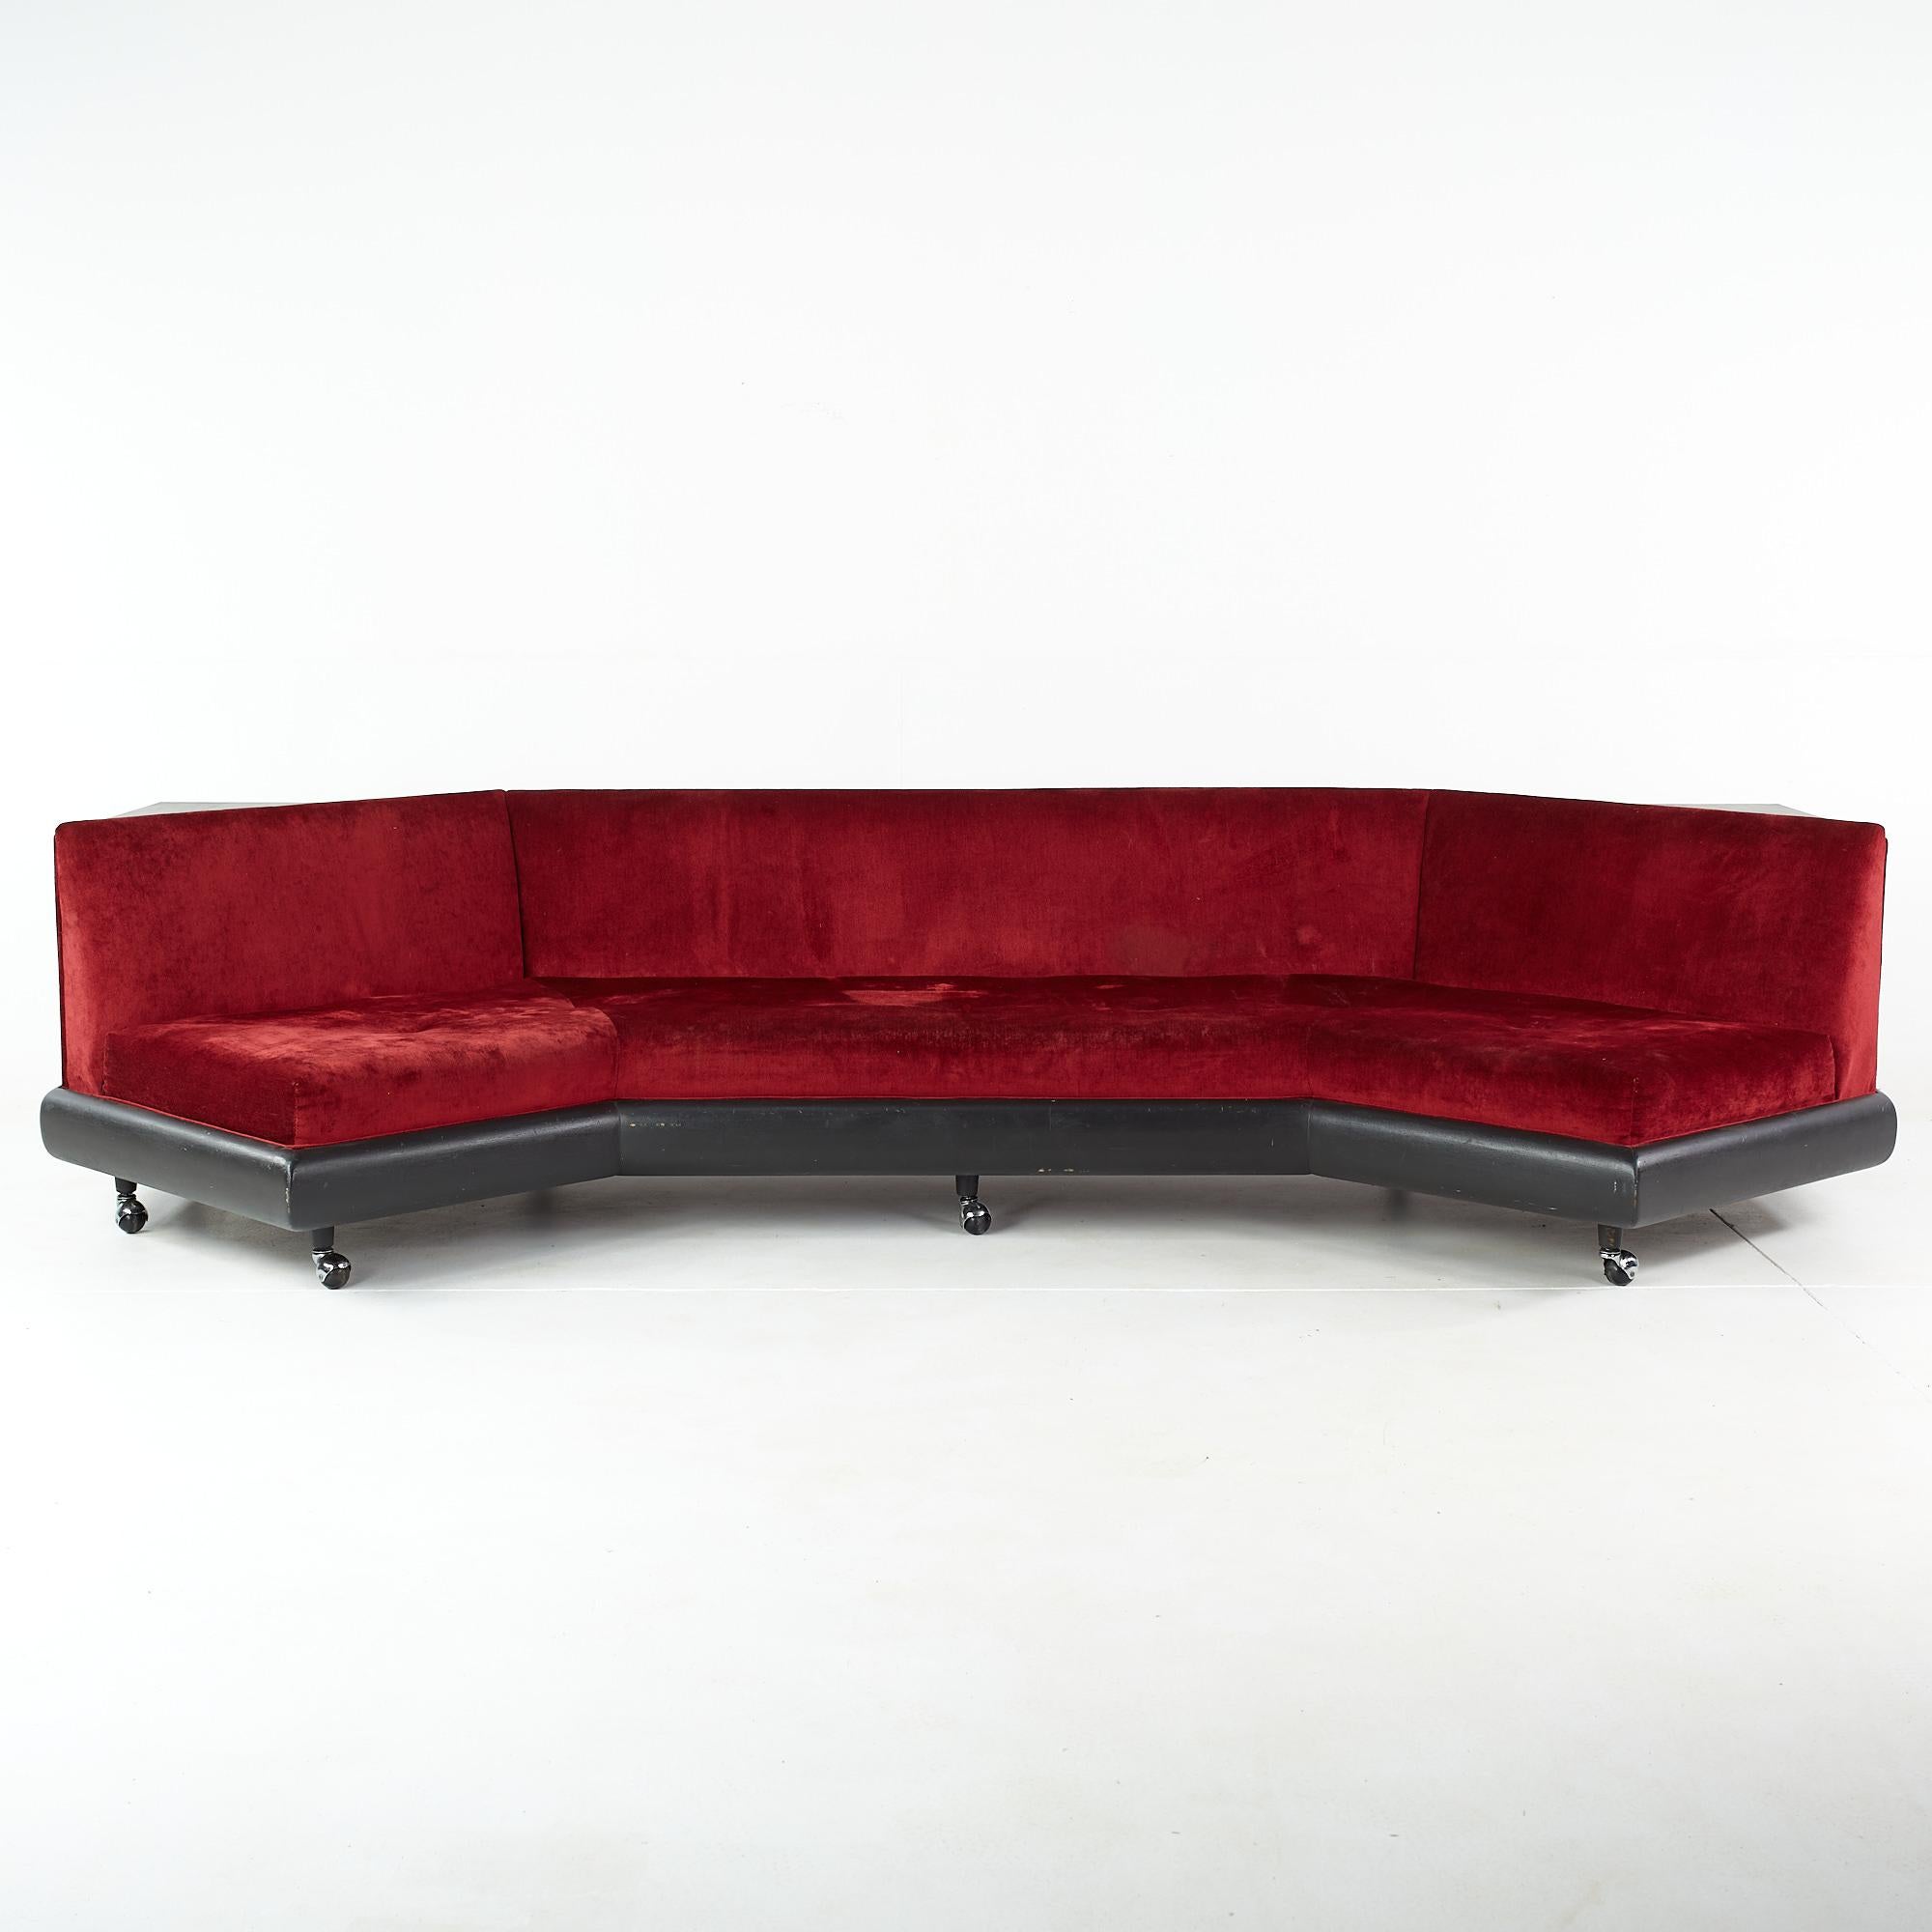 Adrian Pearsall für Craft Associates ebonisiertes Bumerang-Sofa aus der Mitte des Jahrhunderts

Dieses Sofa misst: 123 breit x 53 tief x 28 Zoll hoch, mit einer Sitzhöhe von 15 und Stuhl Abstand von 15 Zoll

Alle Möbelstücke sind in einem so